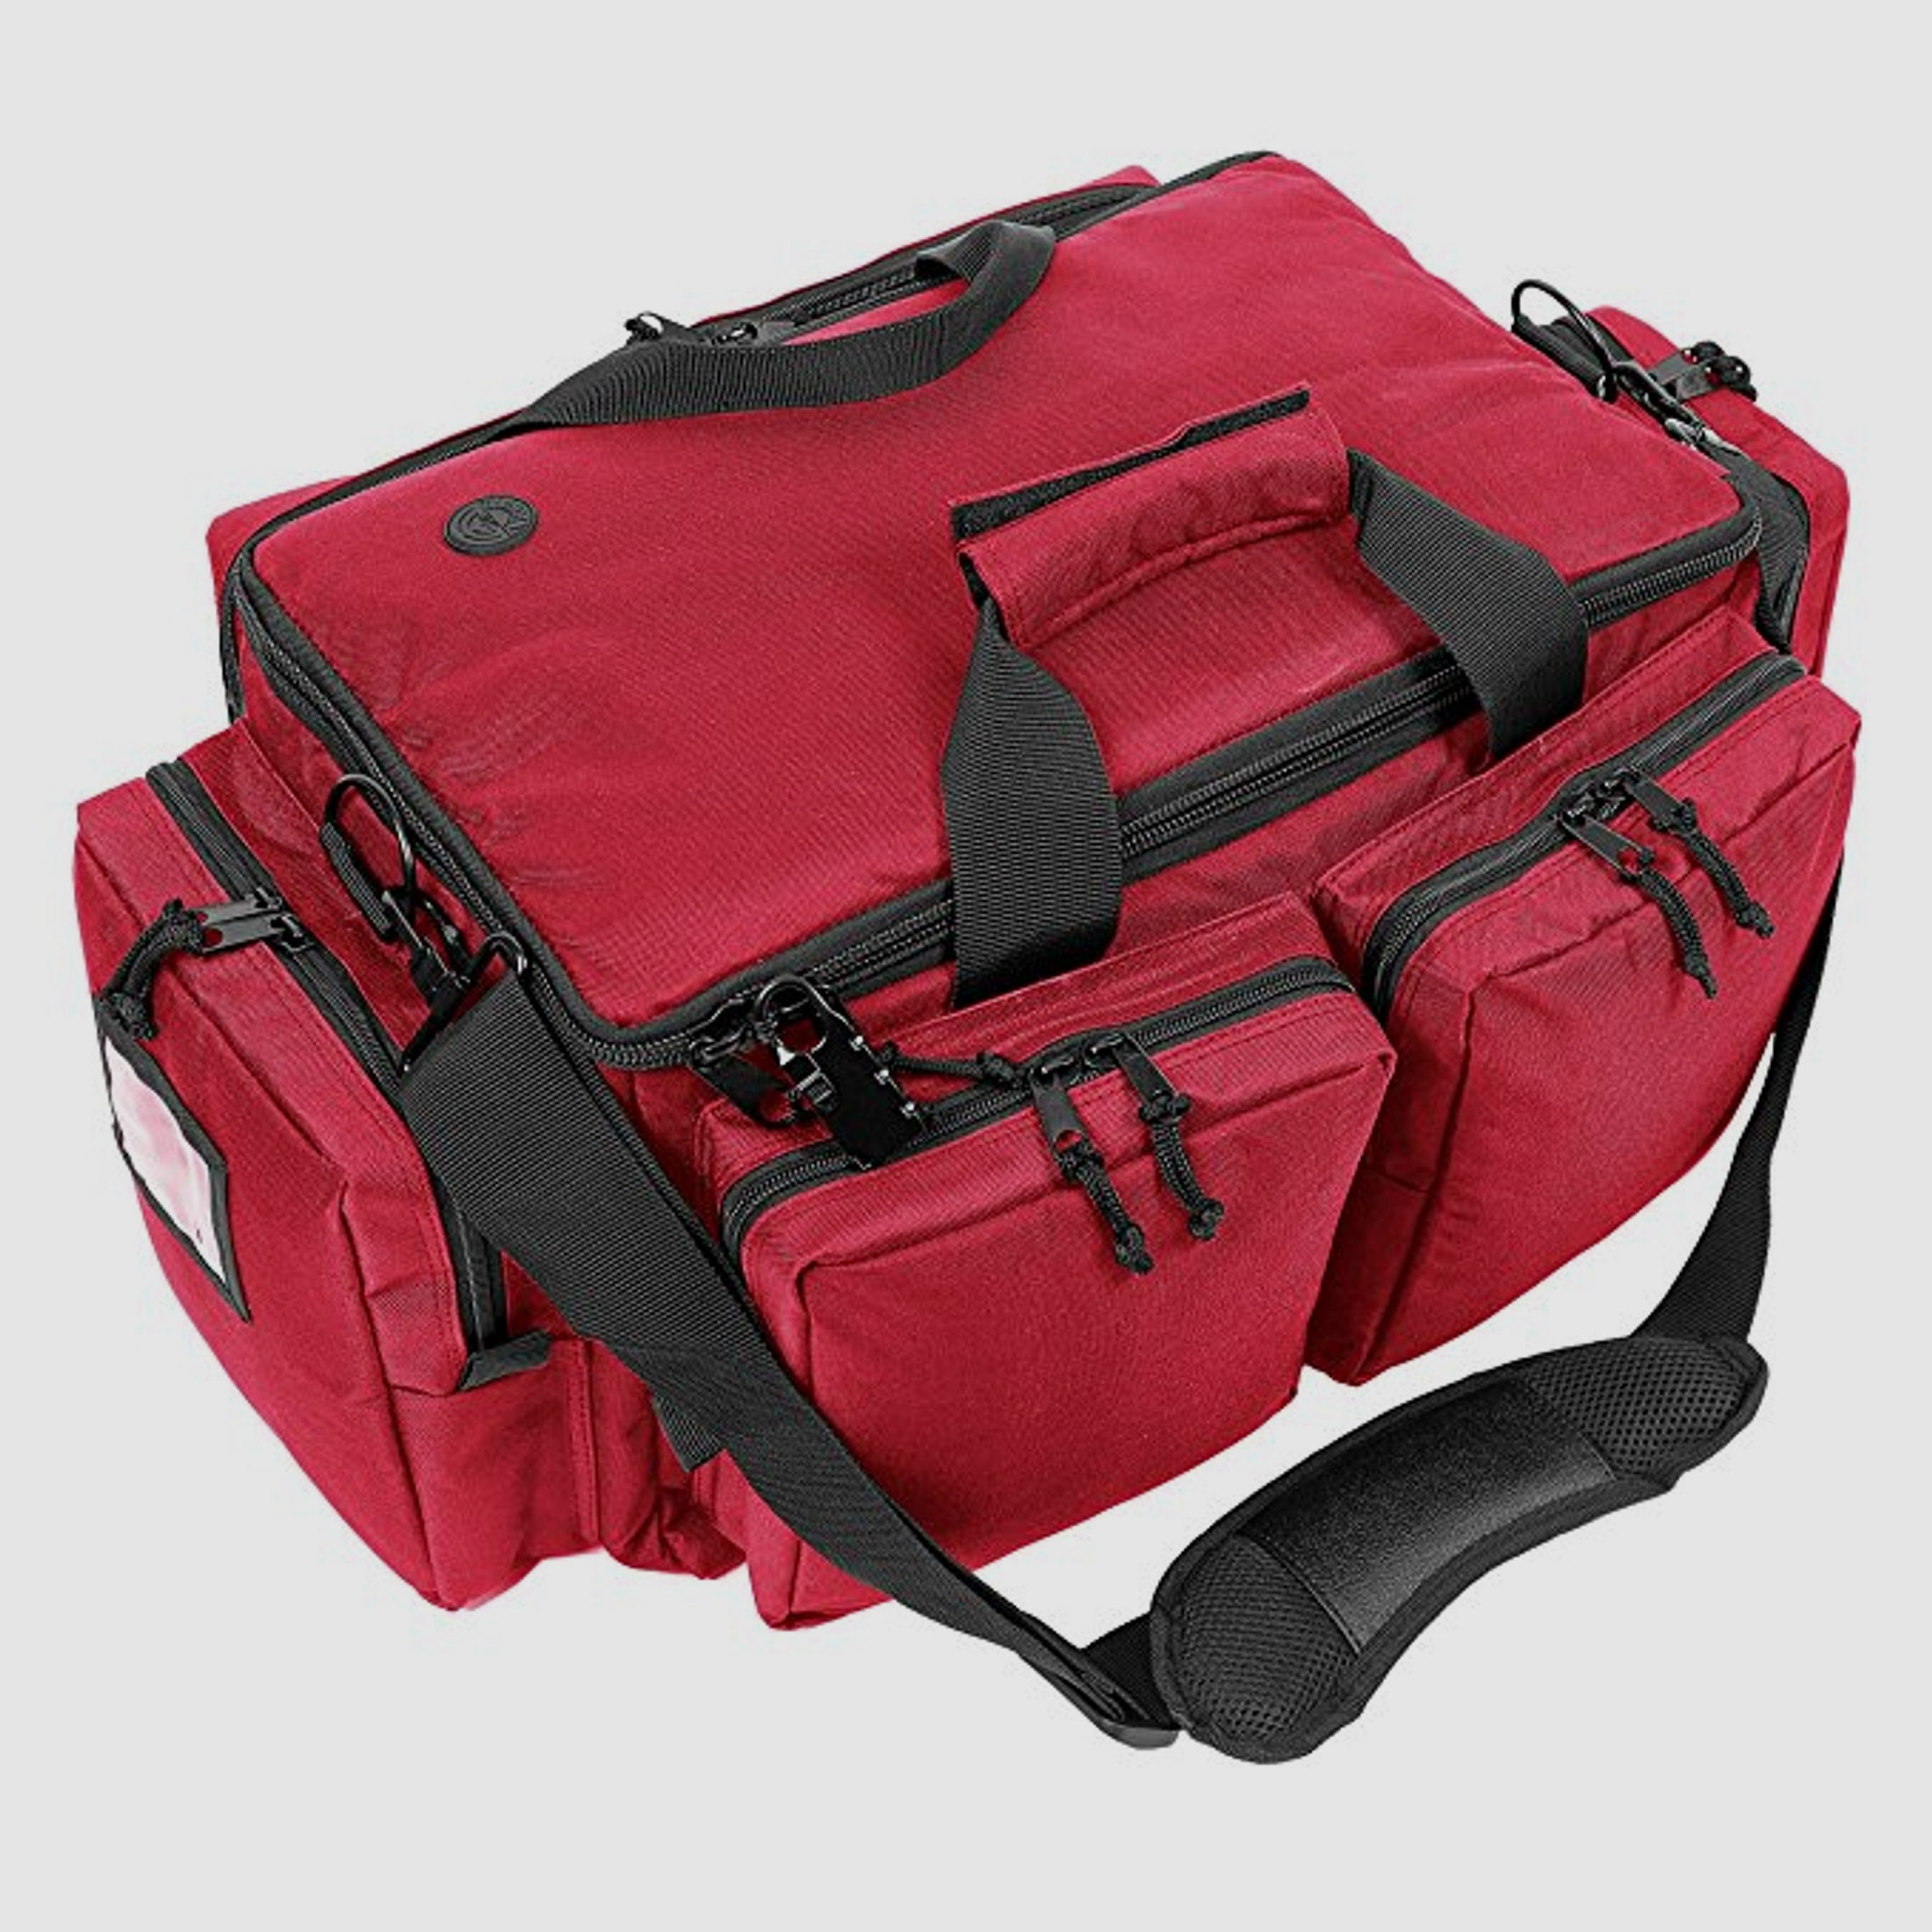 ahg-Anschütz Range Bag für Kurzwaffen und Zubehör (rot)